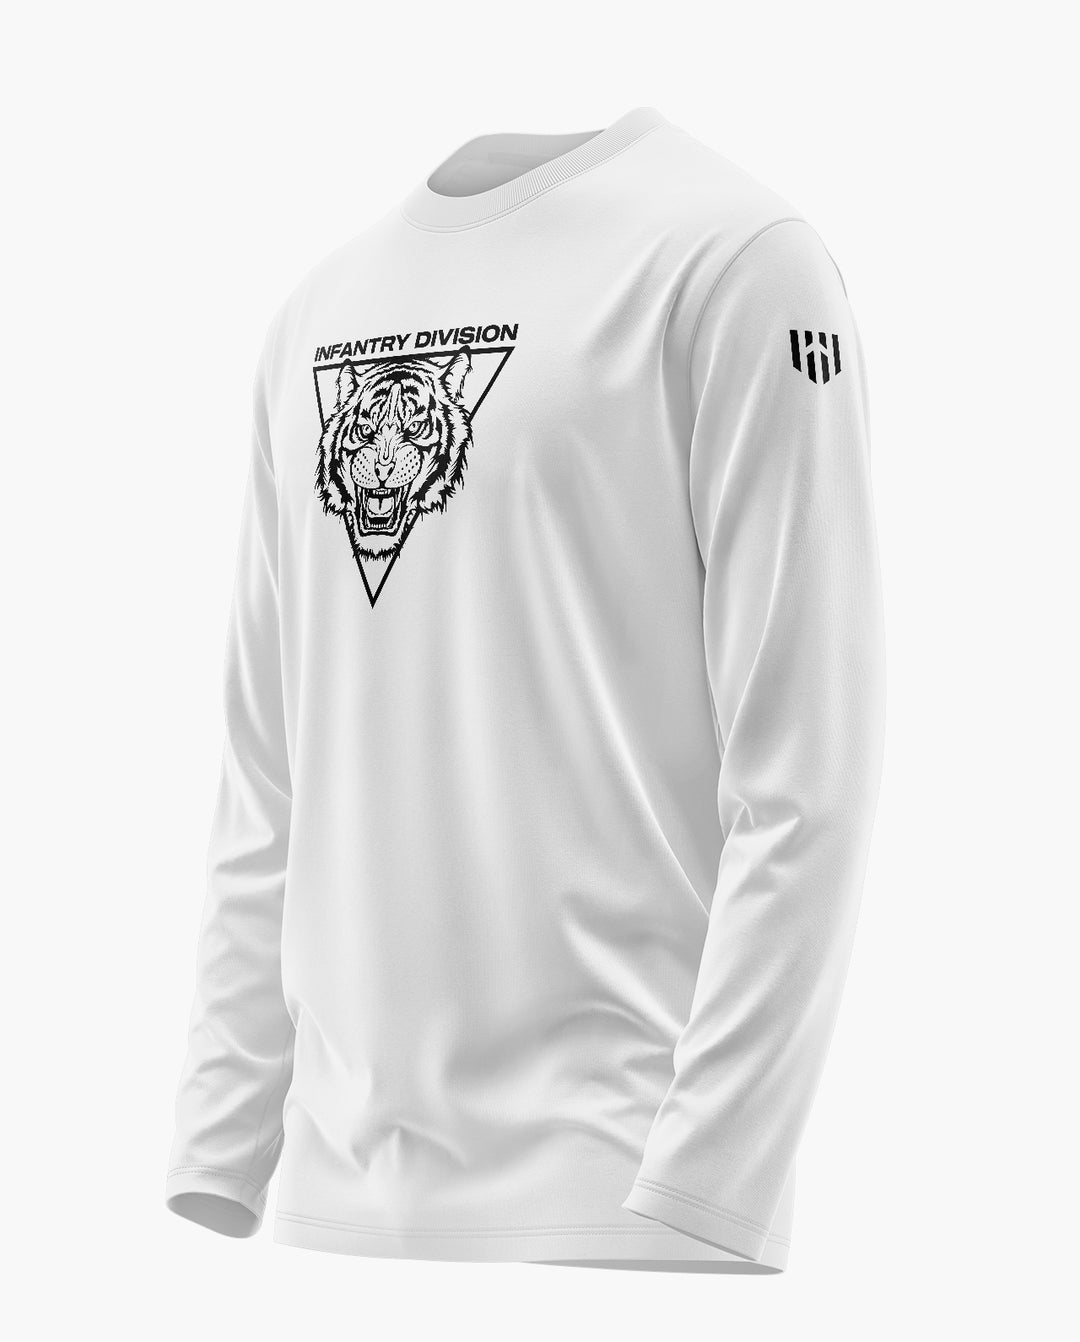 26 Infantry Division Full Sleeve T-Shirt